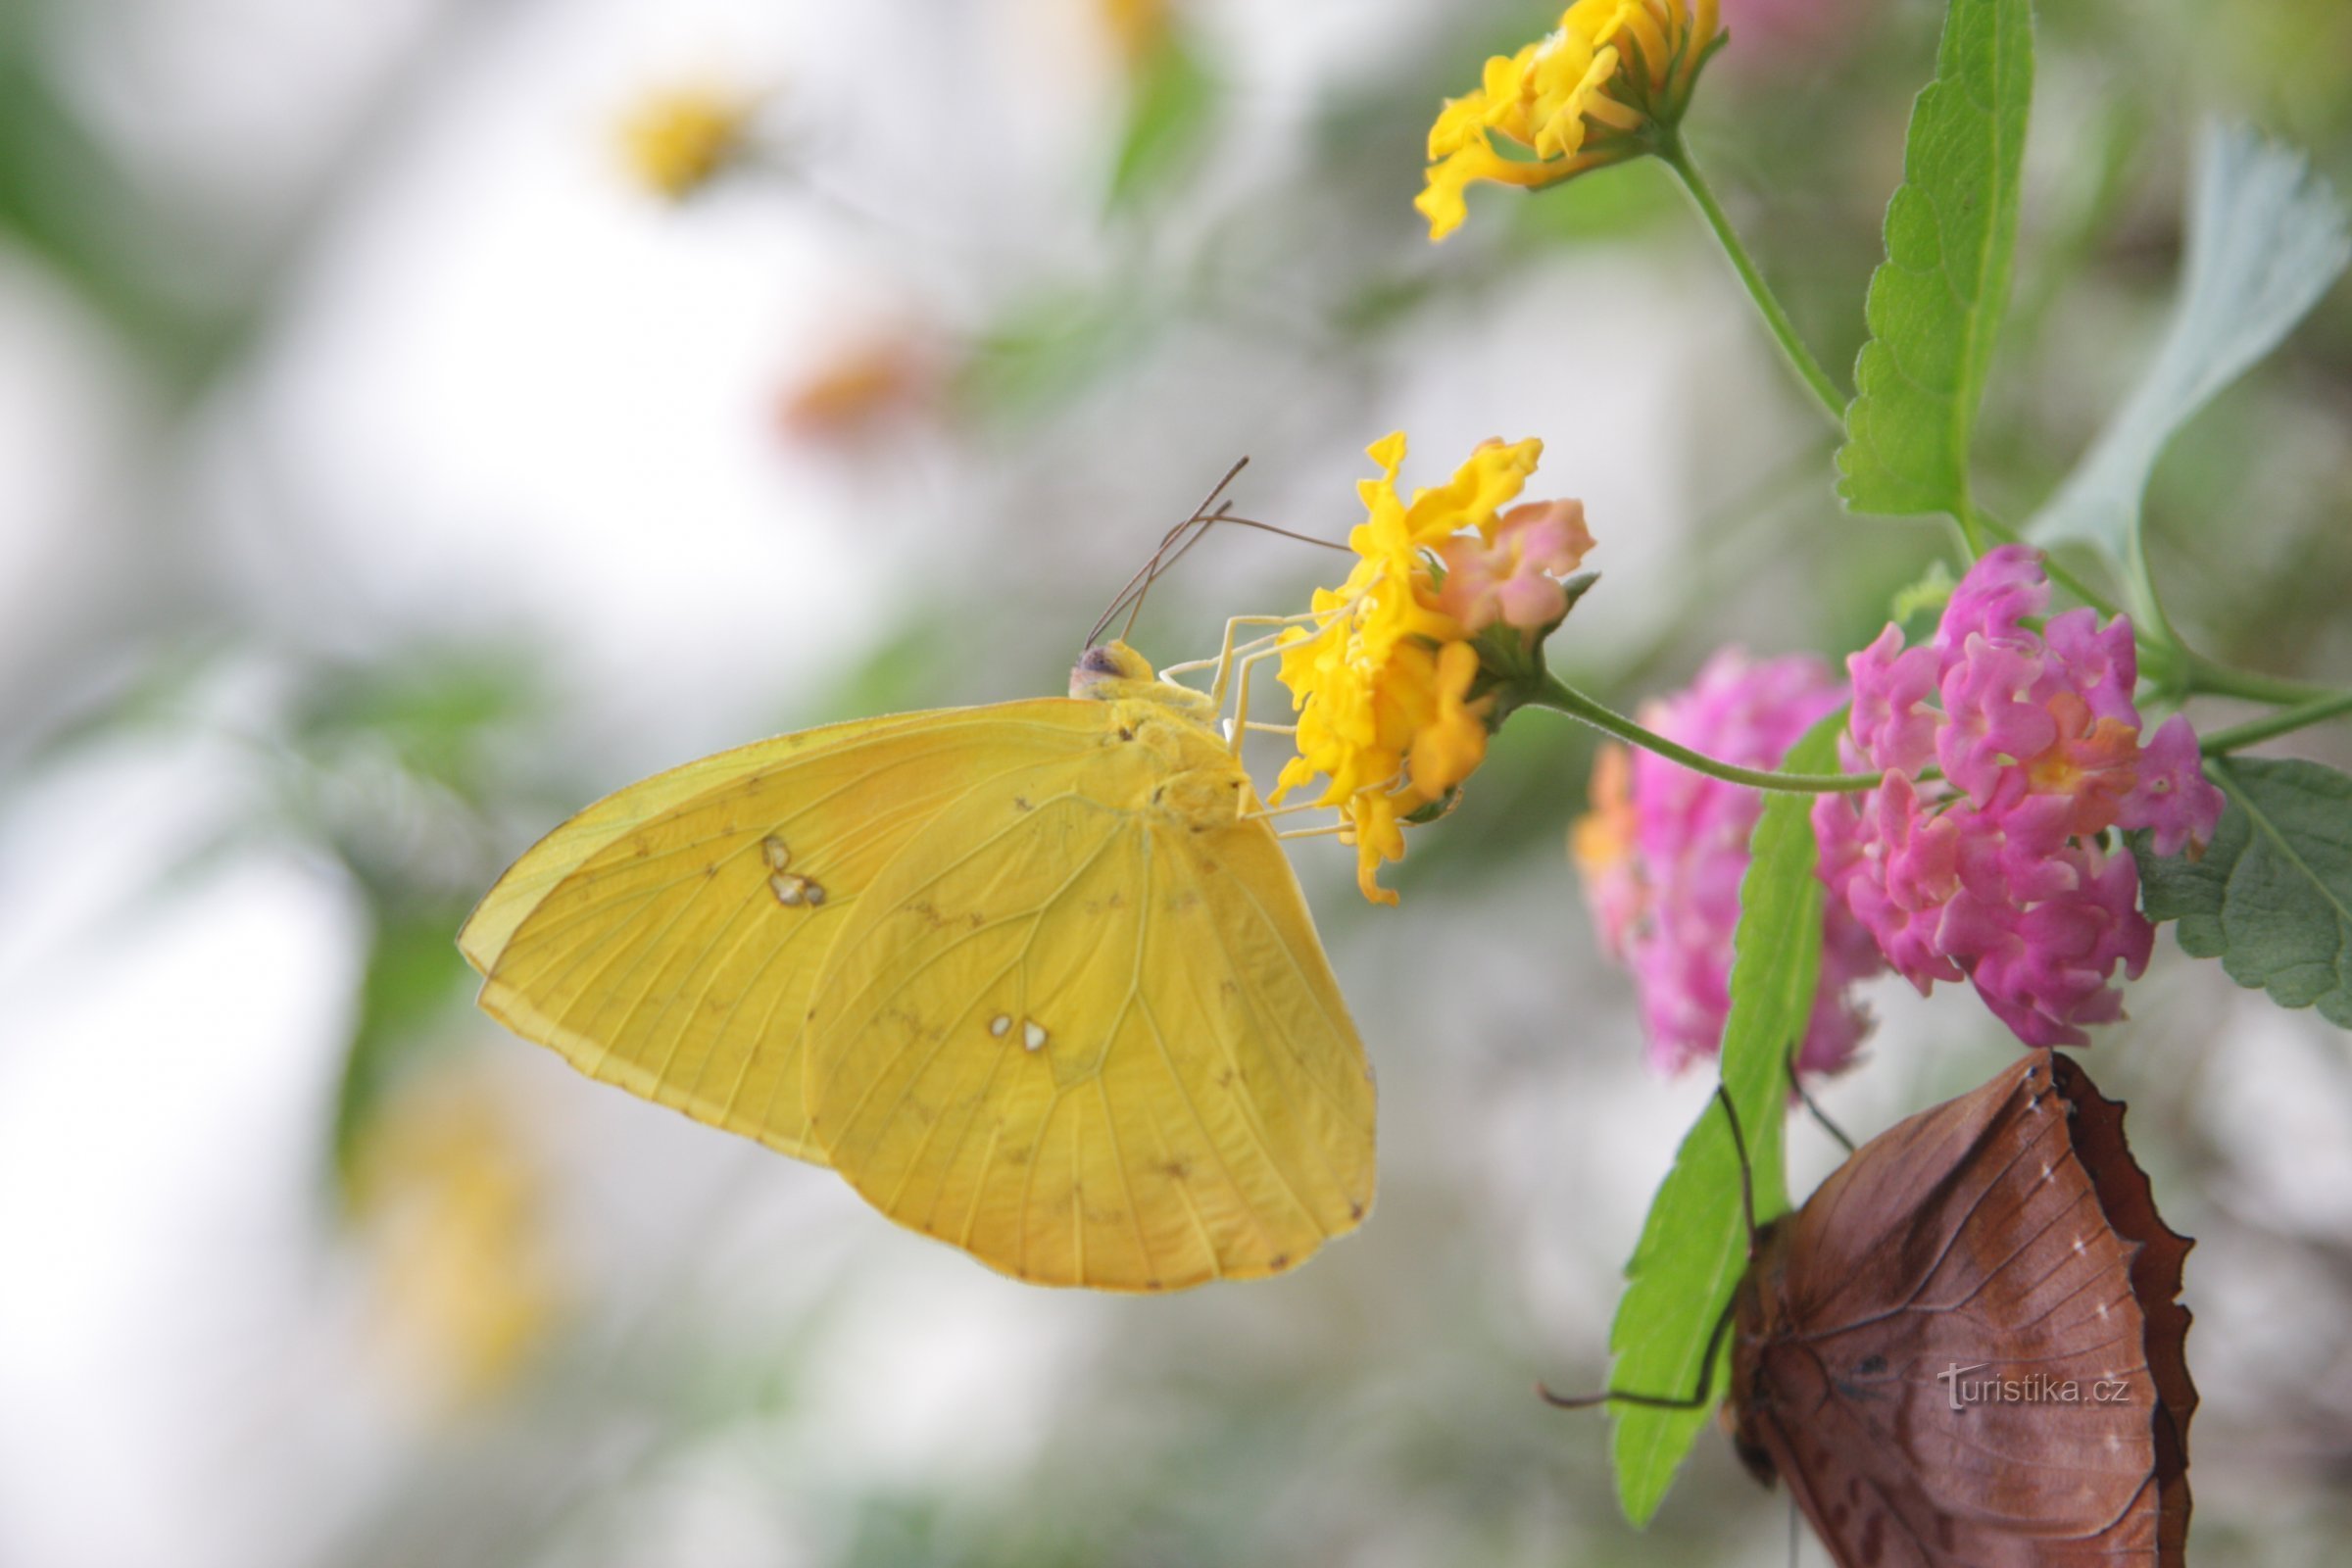 Η μυστηριώδης ζωή των πεταλούδων θα παρουσιαστεί από έκθεση στο θερμοκήπιο Fata Morgana